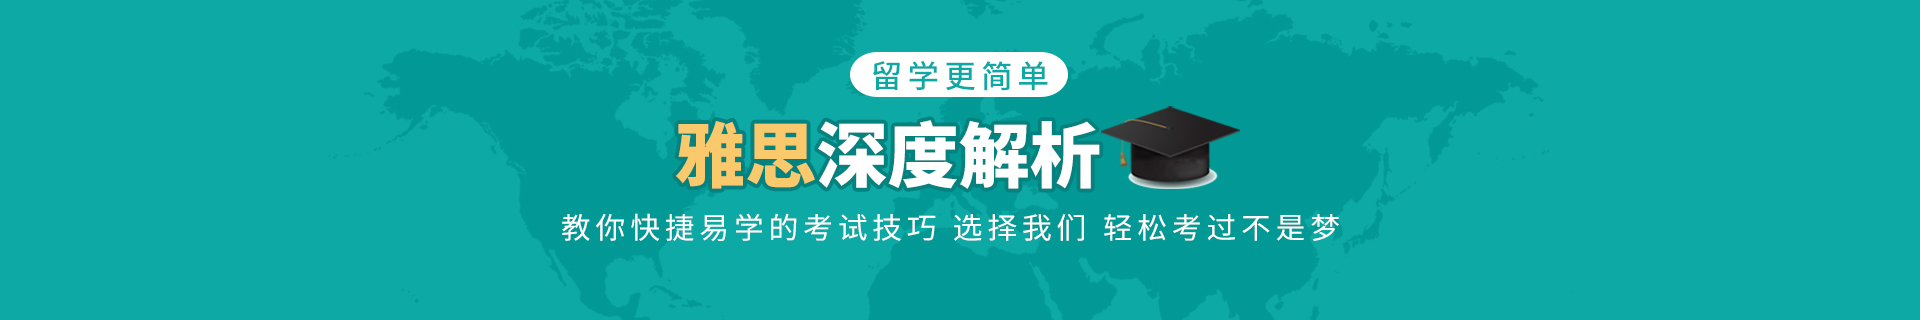 上海长宁环球教育培训机构